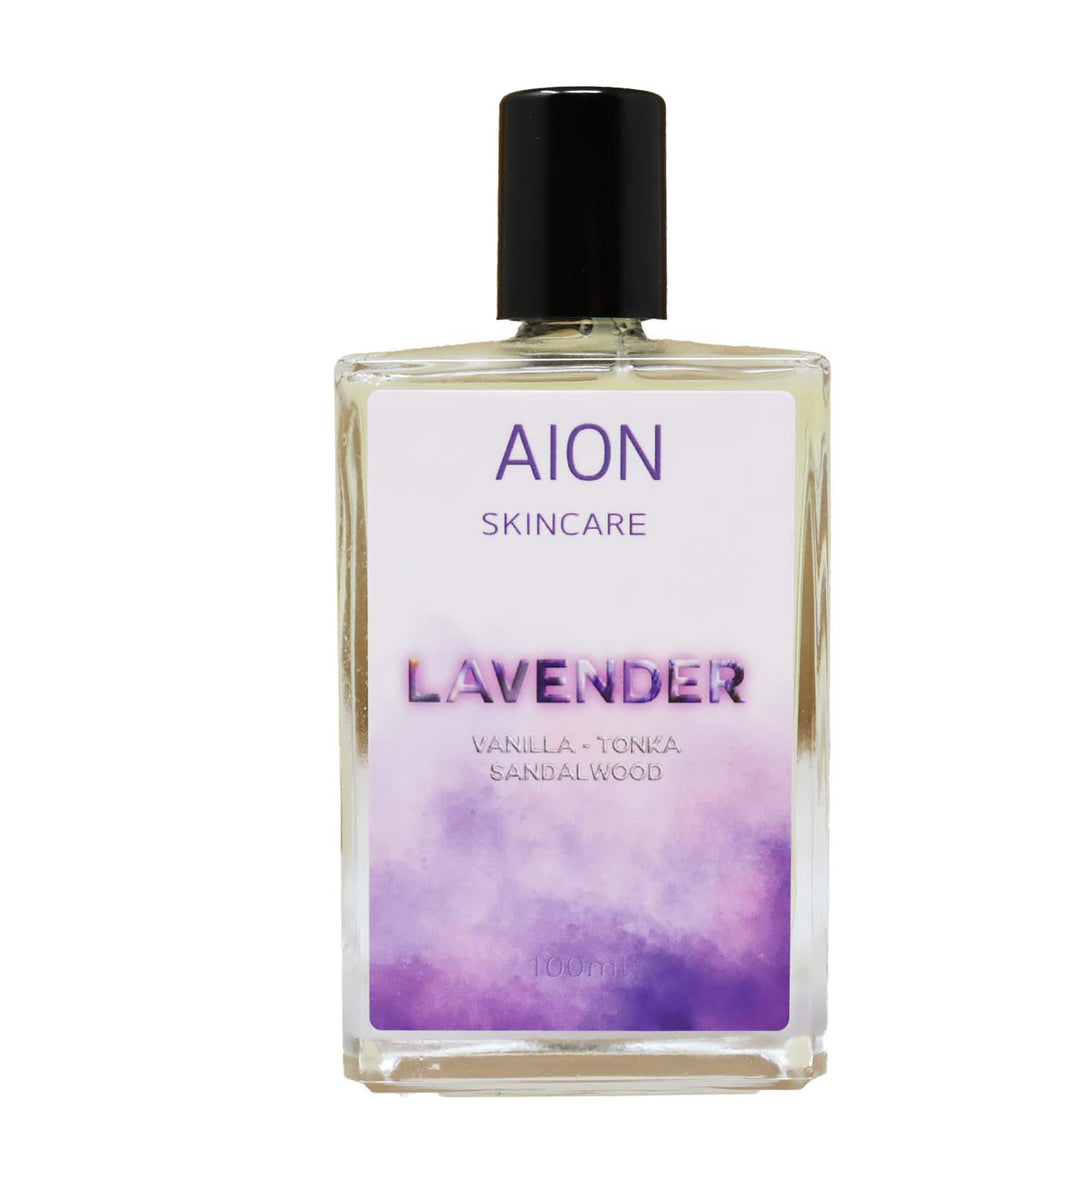 Aion Skincare Lavender Dopobarba Splash Senza Alcool 100 ml